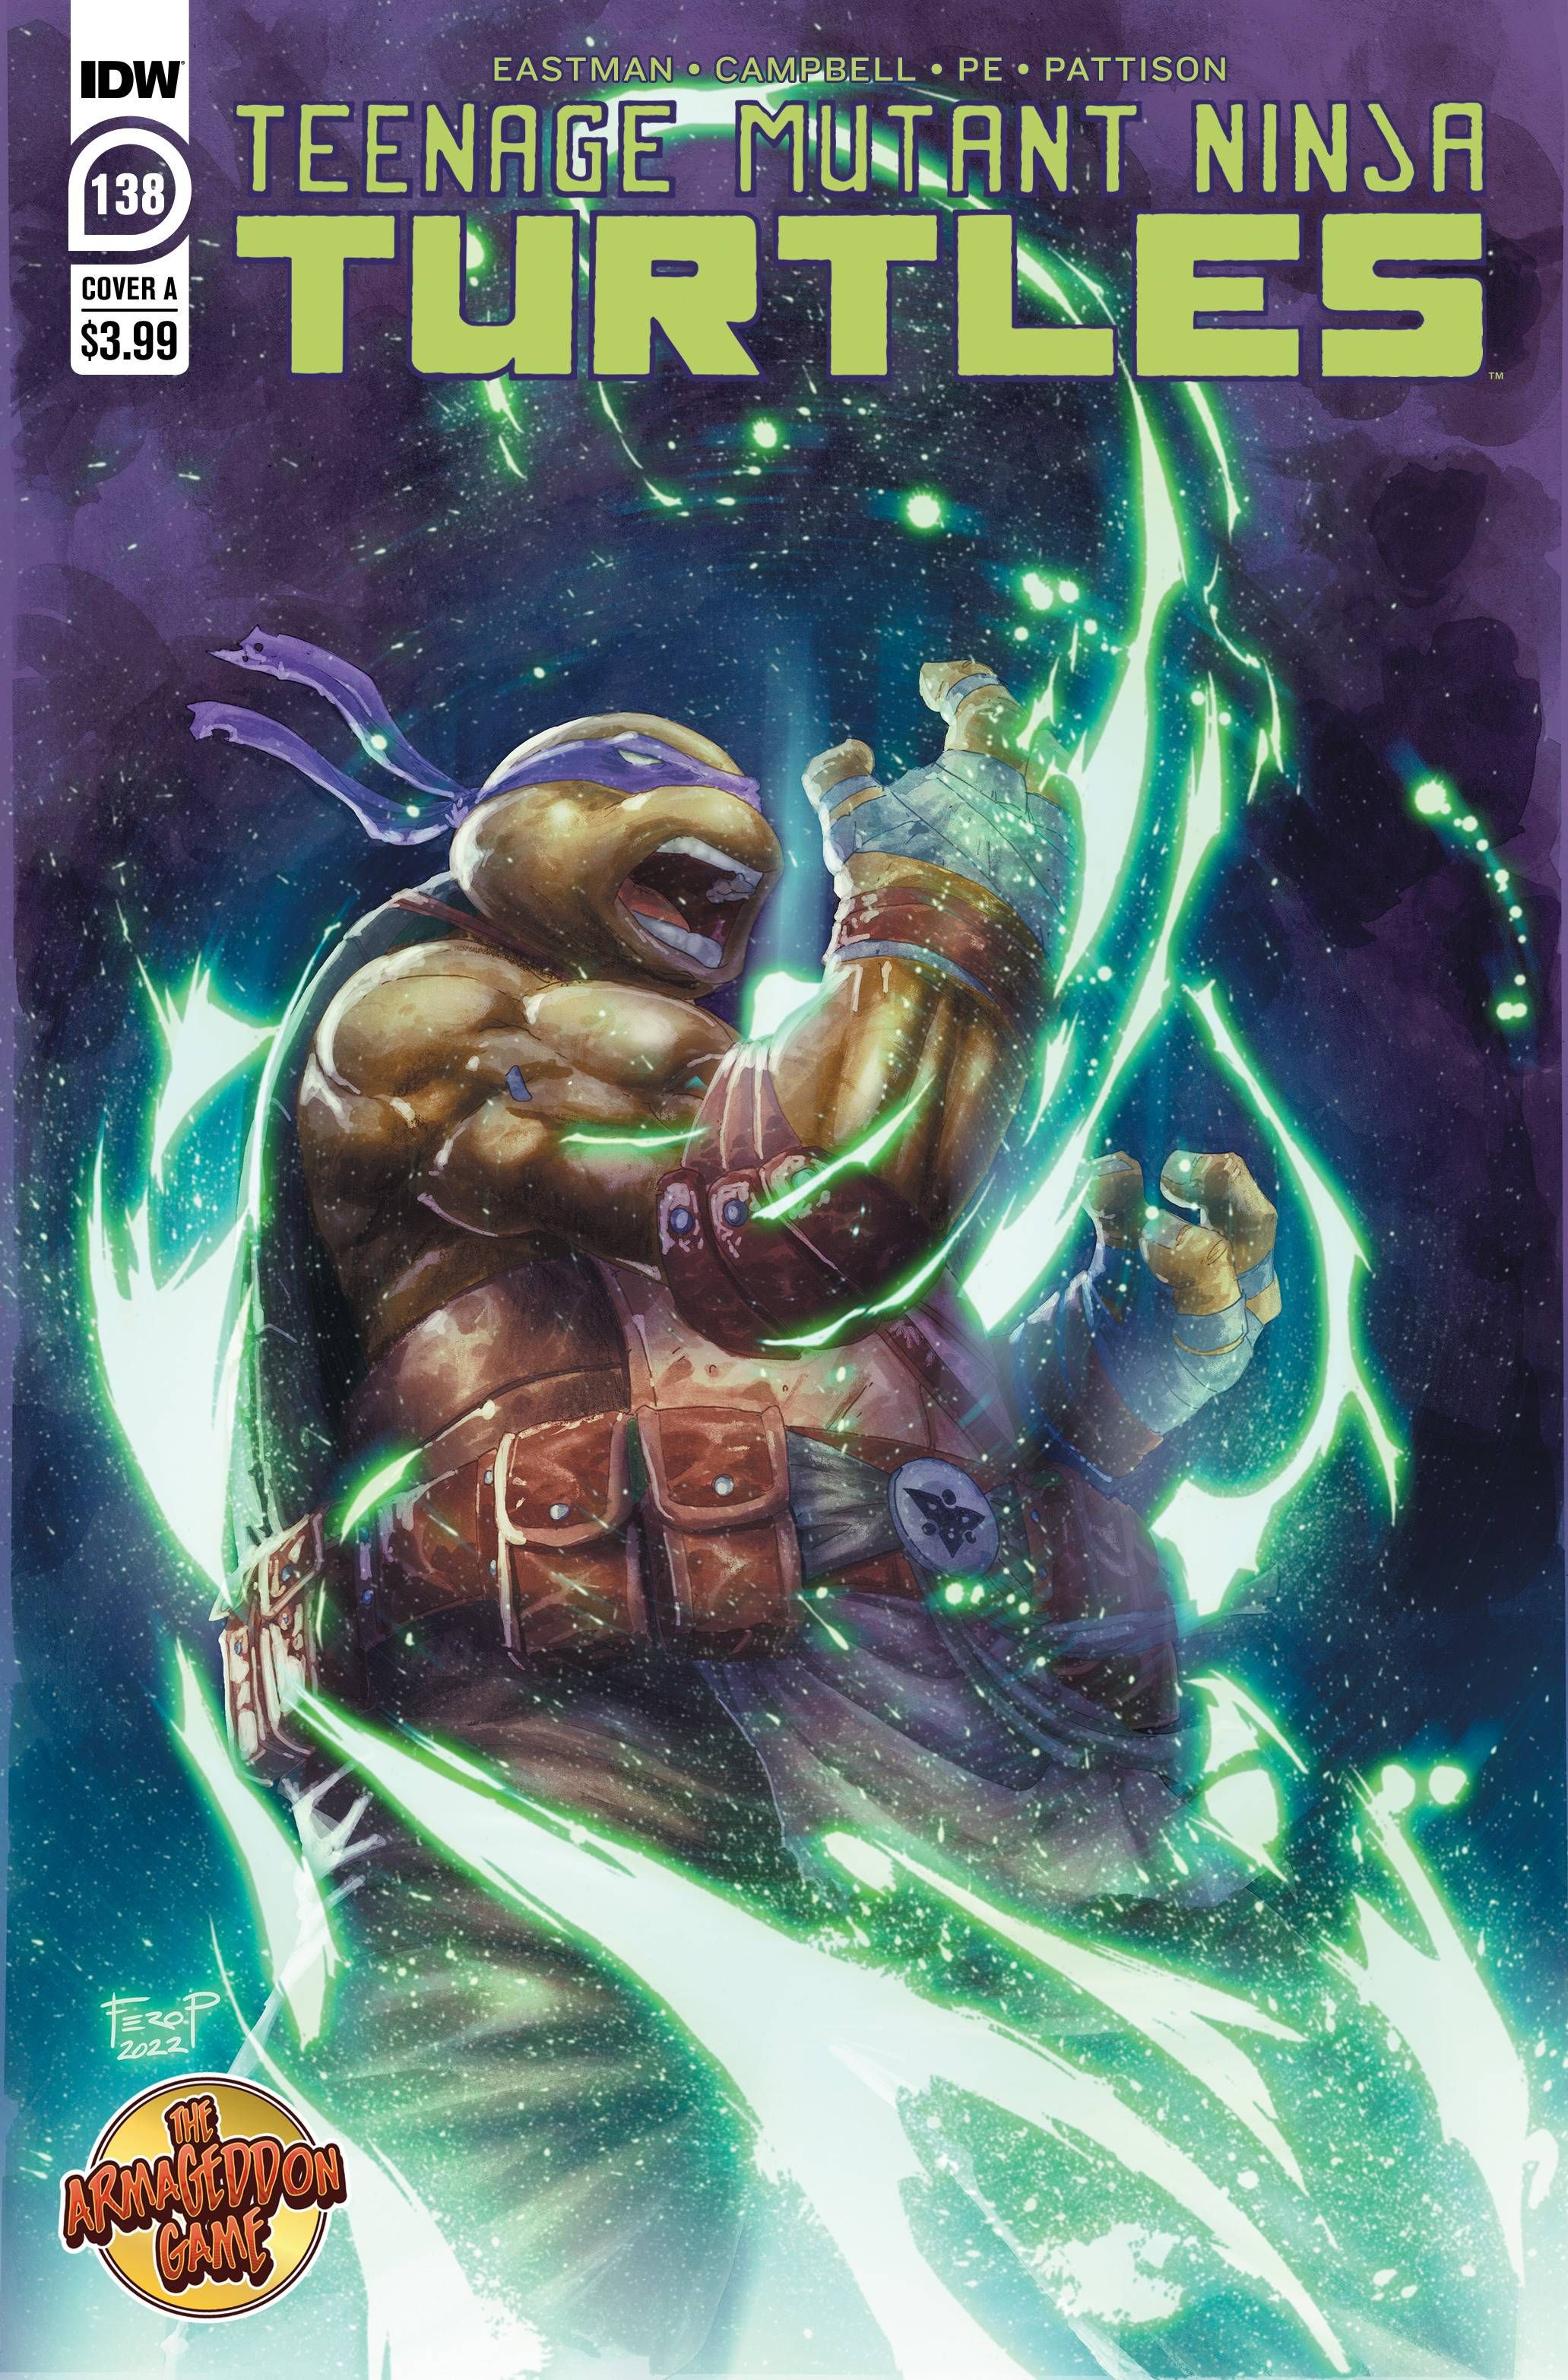 Teenage Mutant Ninja Turtles #138 Comic